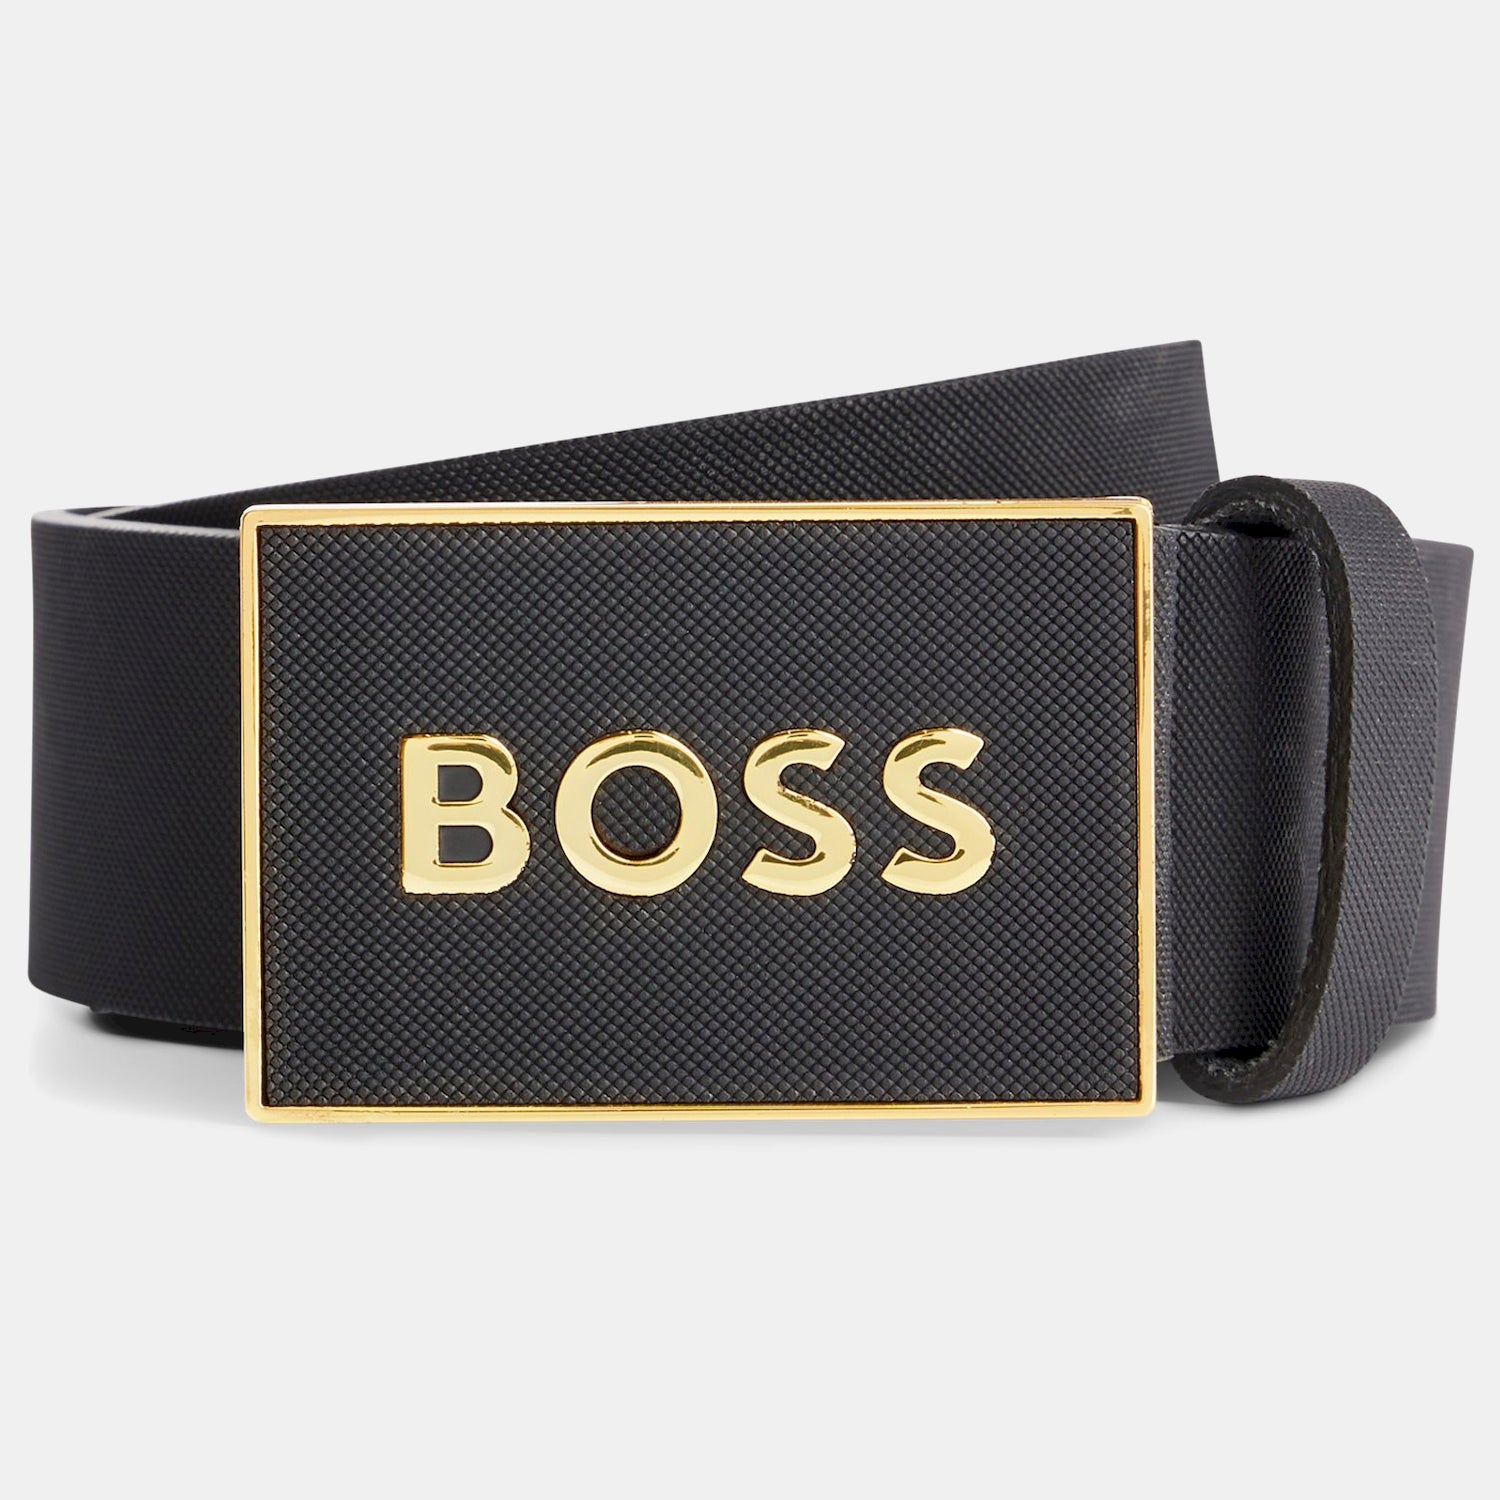 Boss Cinto Belt Bossicon S1 40 Blk Gold Preto Ouro_shot1